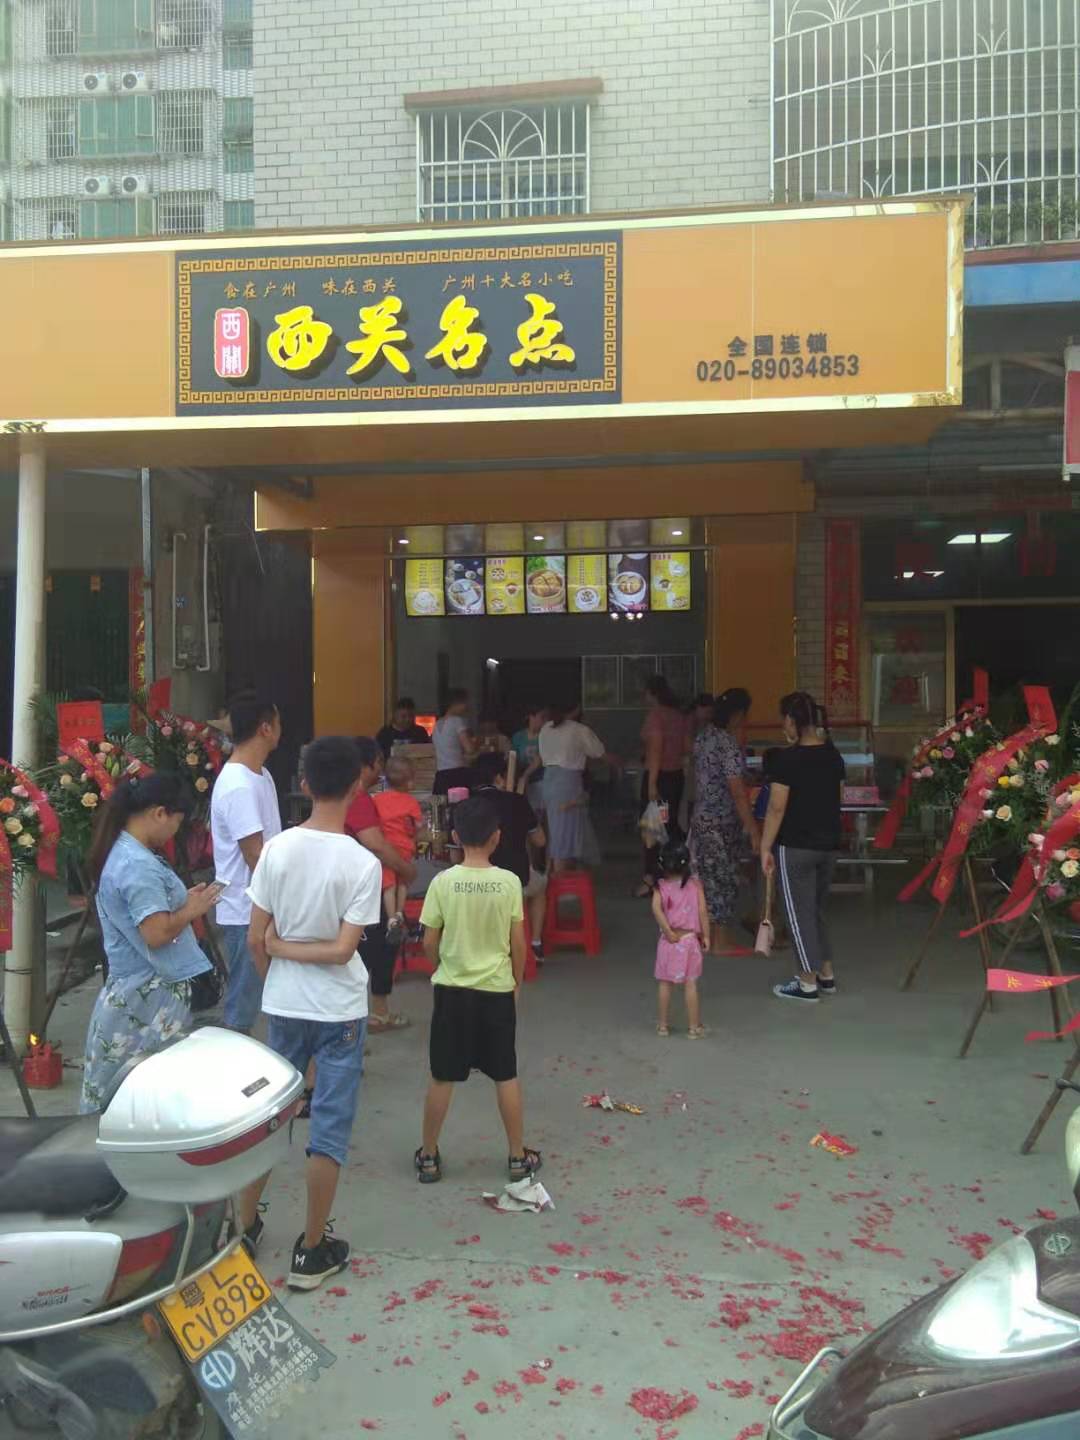 热烈祝贺惠州博罗龙溪的西关名点店成功开业